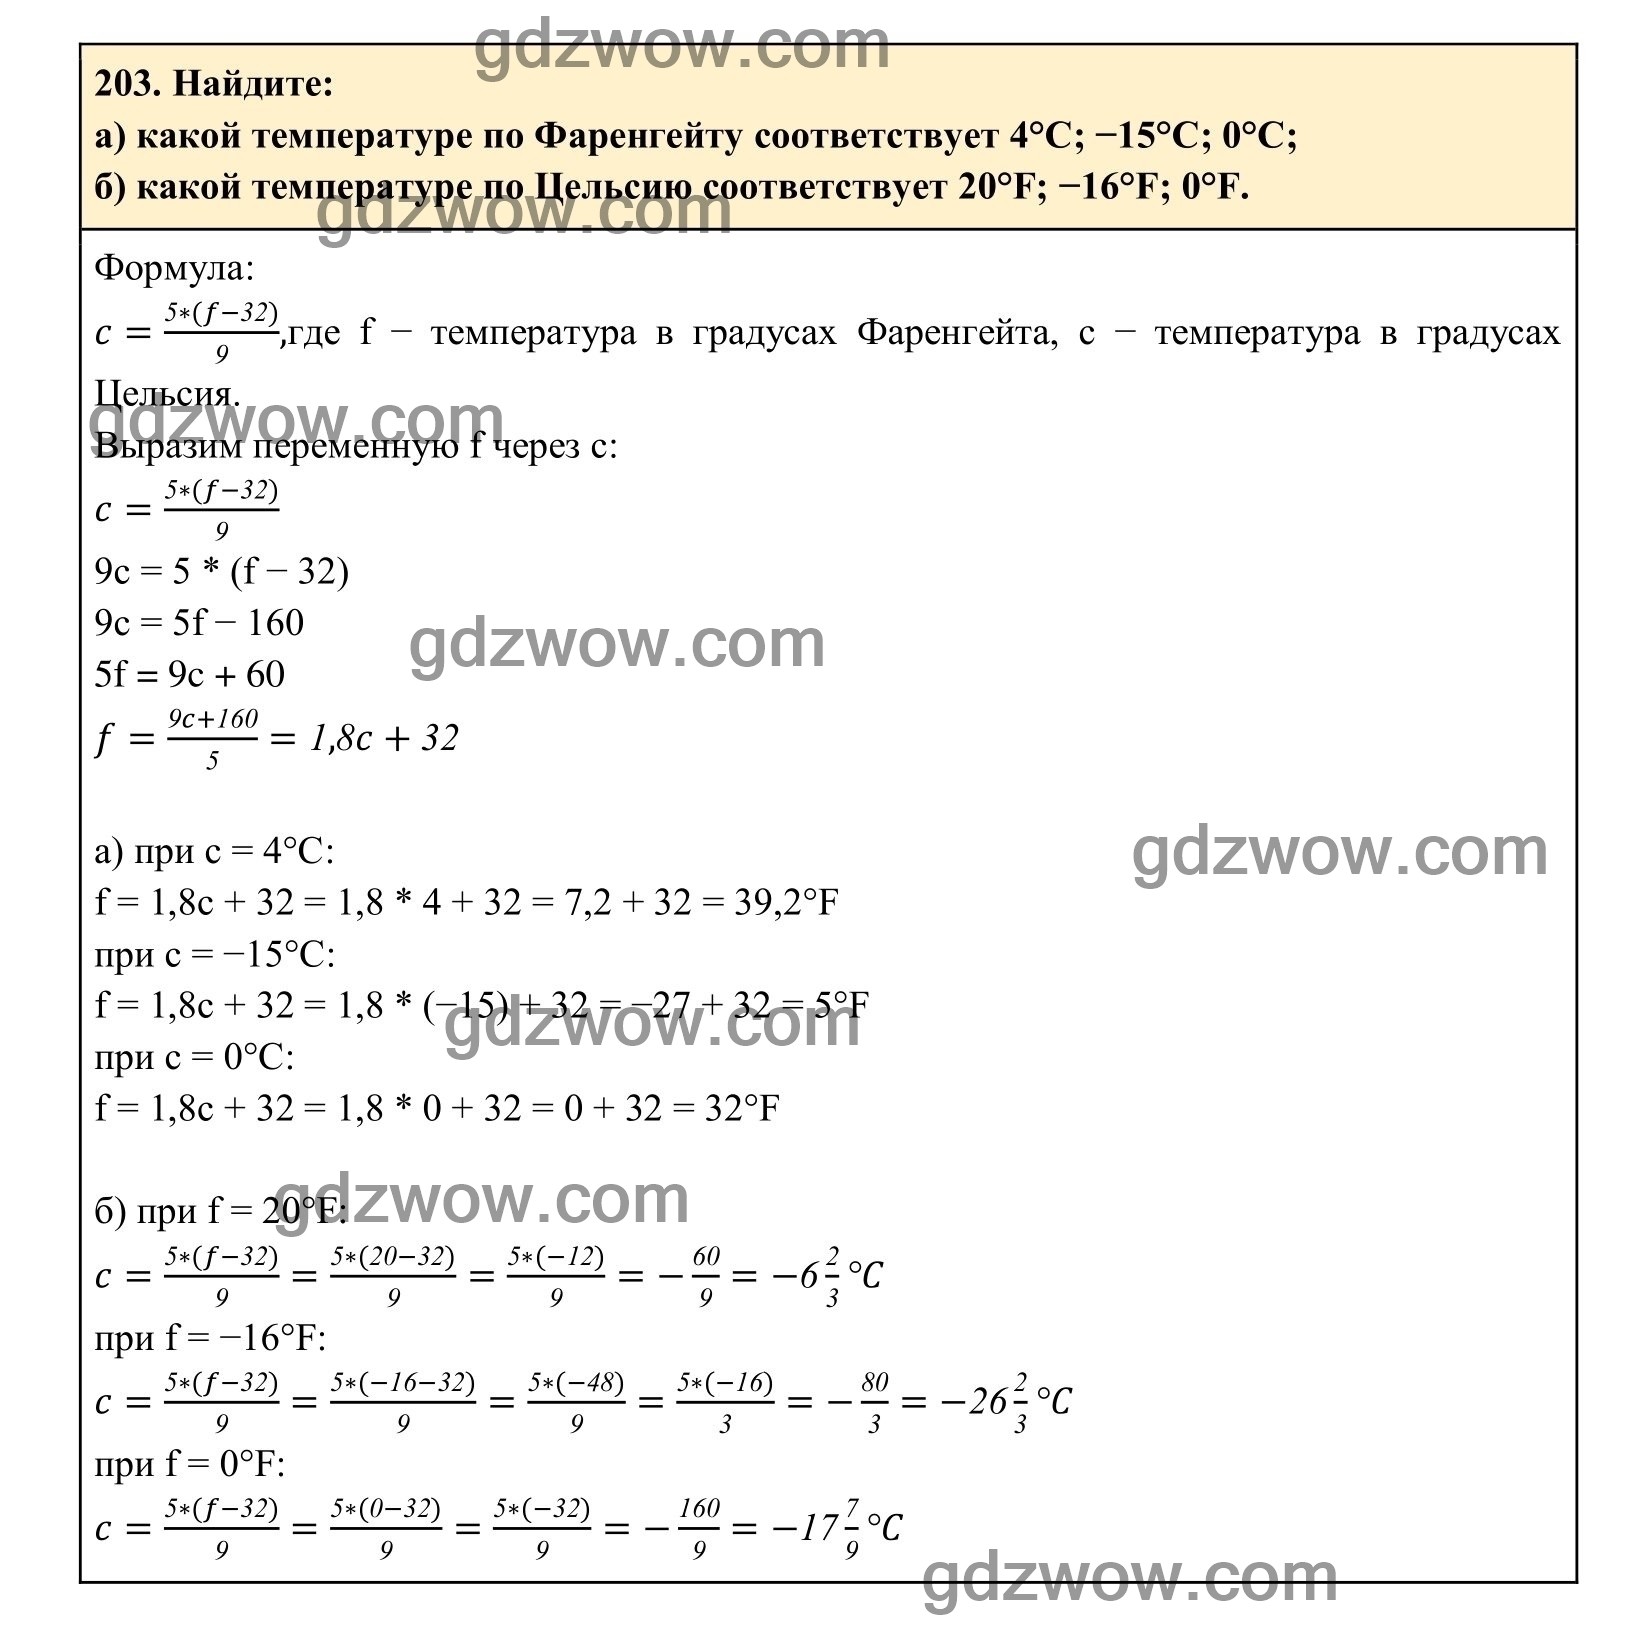 Упражнение 203 - ГДЗ по Алгебре 7 класс Учебник Макарычев (решебник) - GDZwow